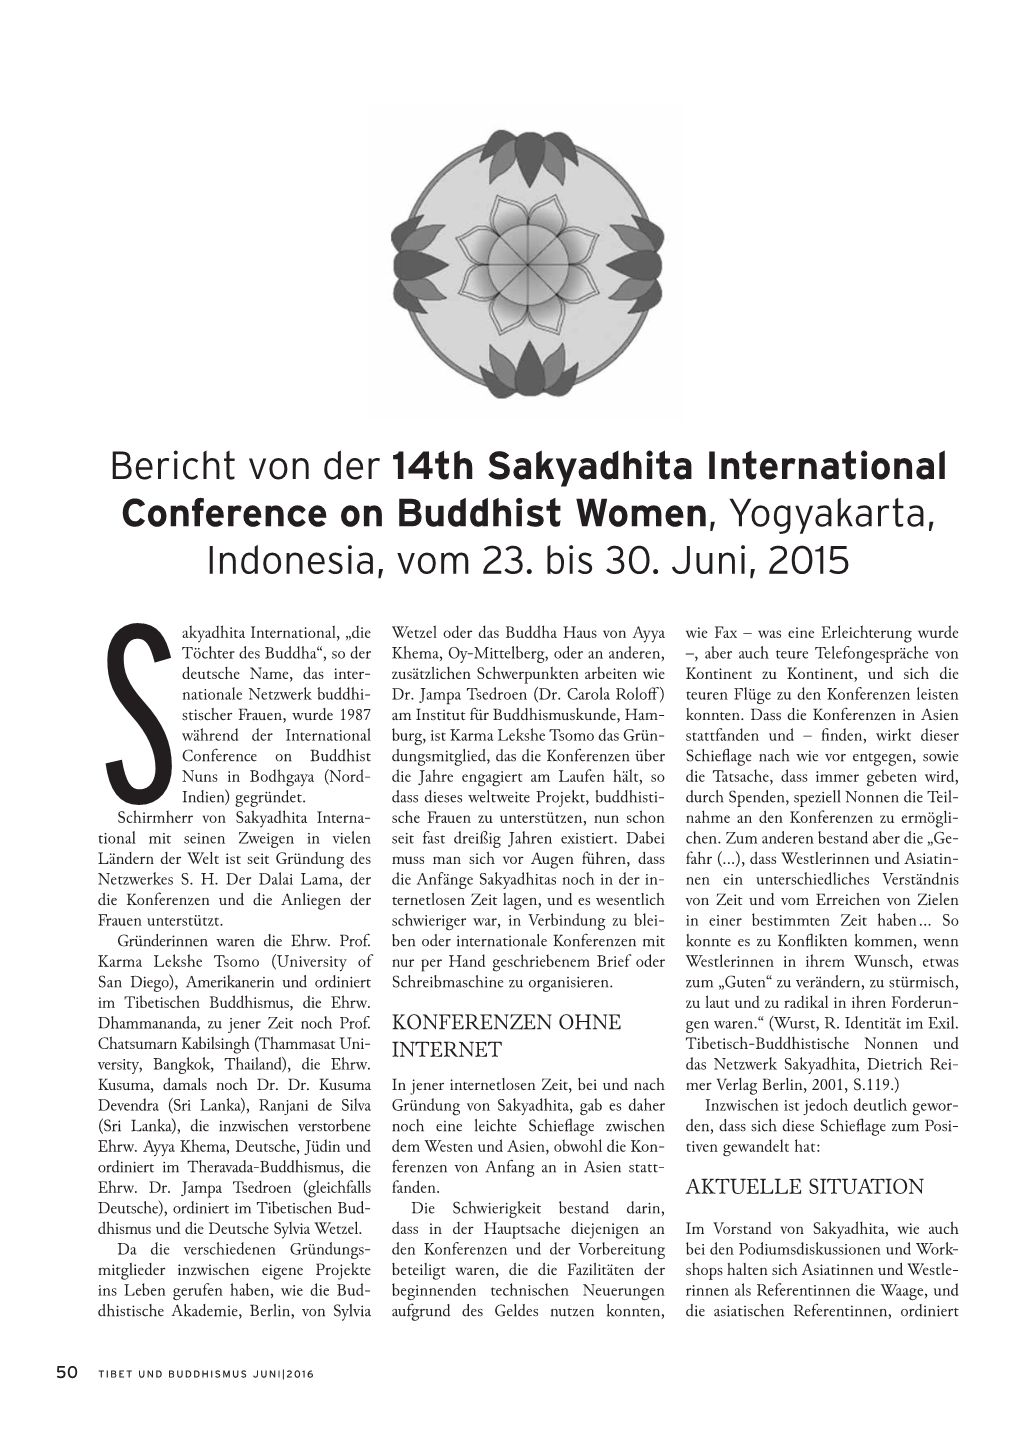 Bericht Von Der 14Th Sakyadhita International Conference on Buddhist Women, Yogyakarta, Indonesia, Vom 23